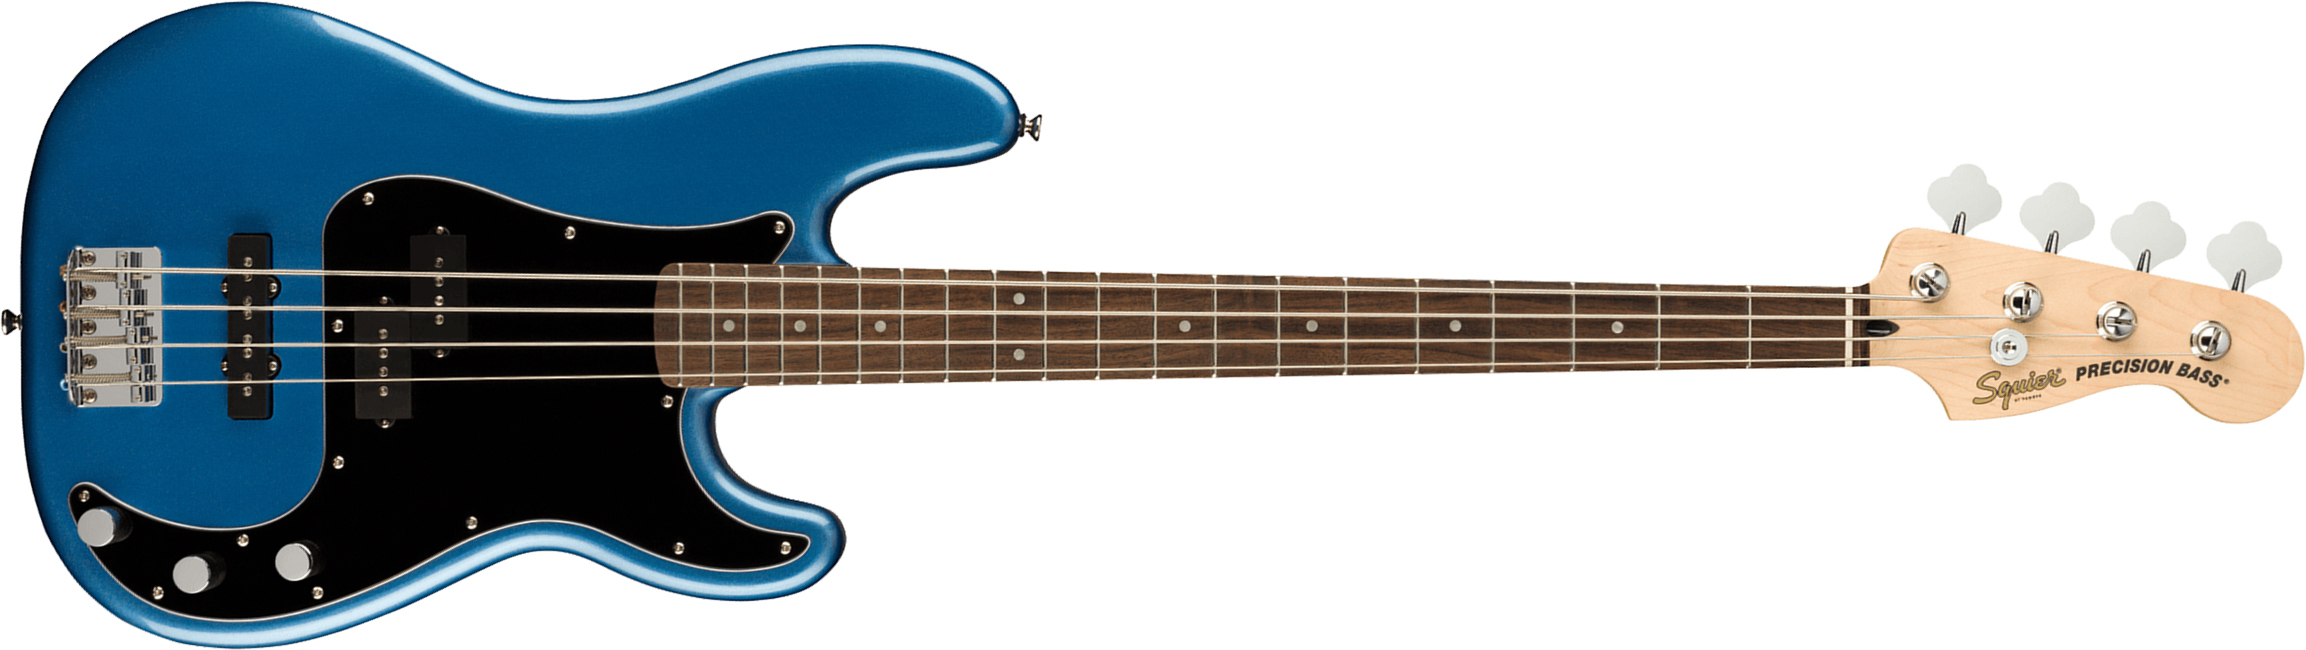 Squier Precision Bass Affinity Pj 2021 Lau - Lake Placid Blue - Basse Électrique Solid Body - Main picture